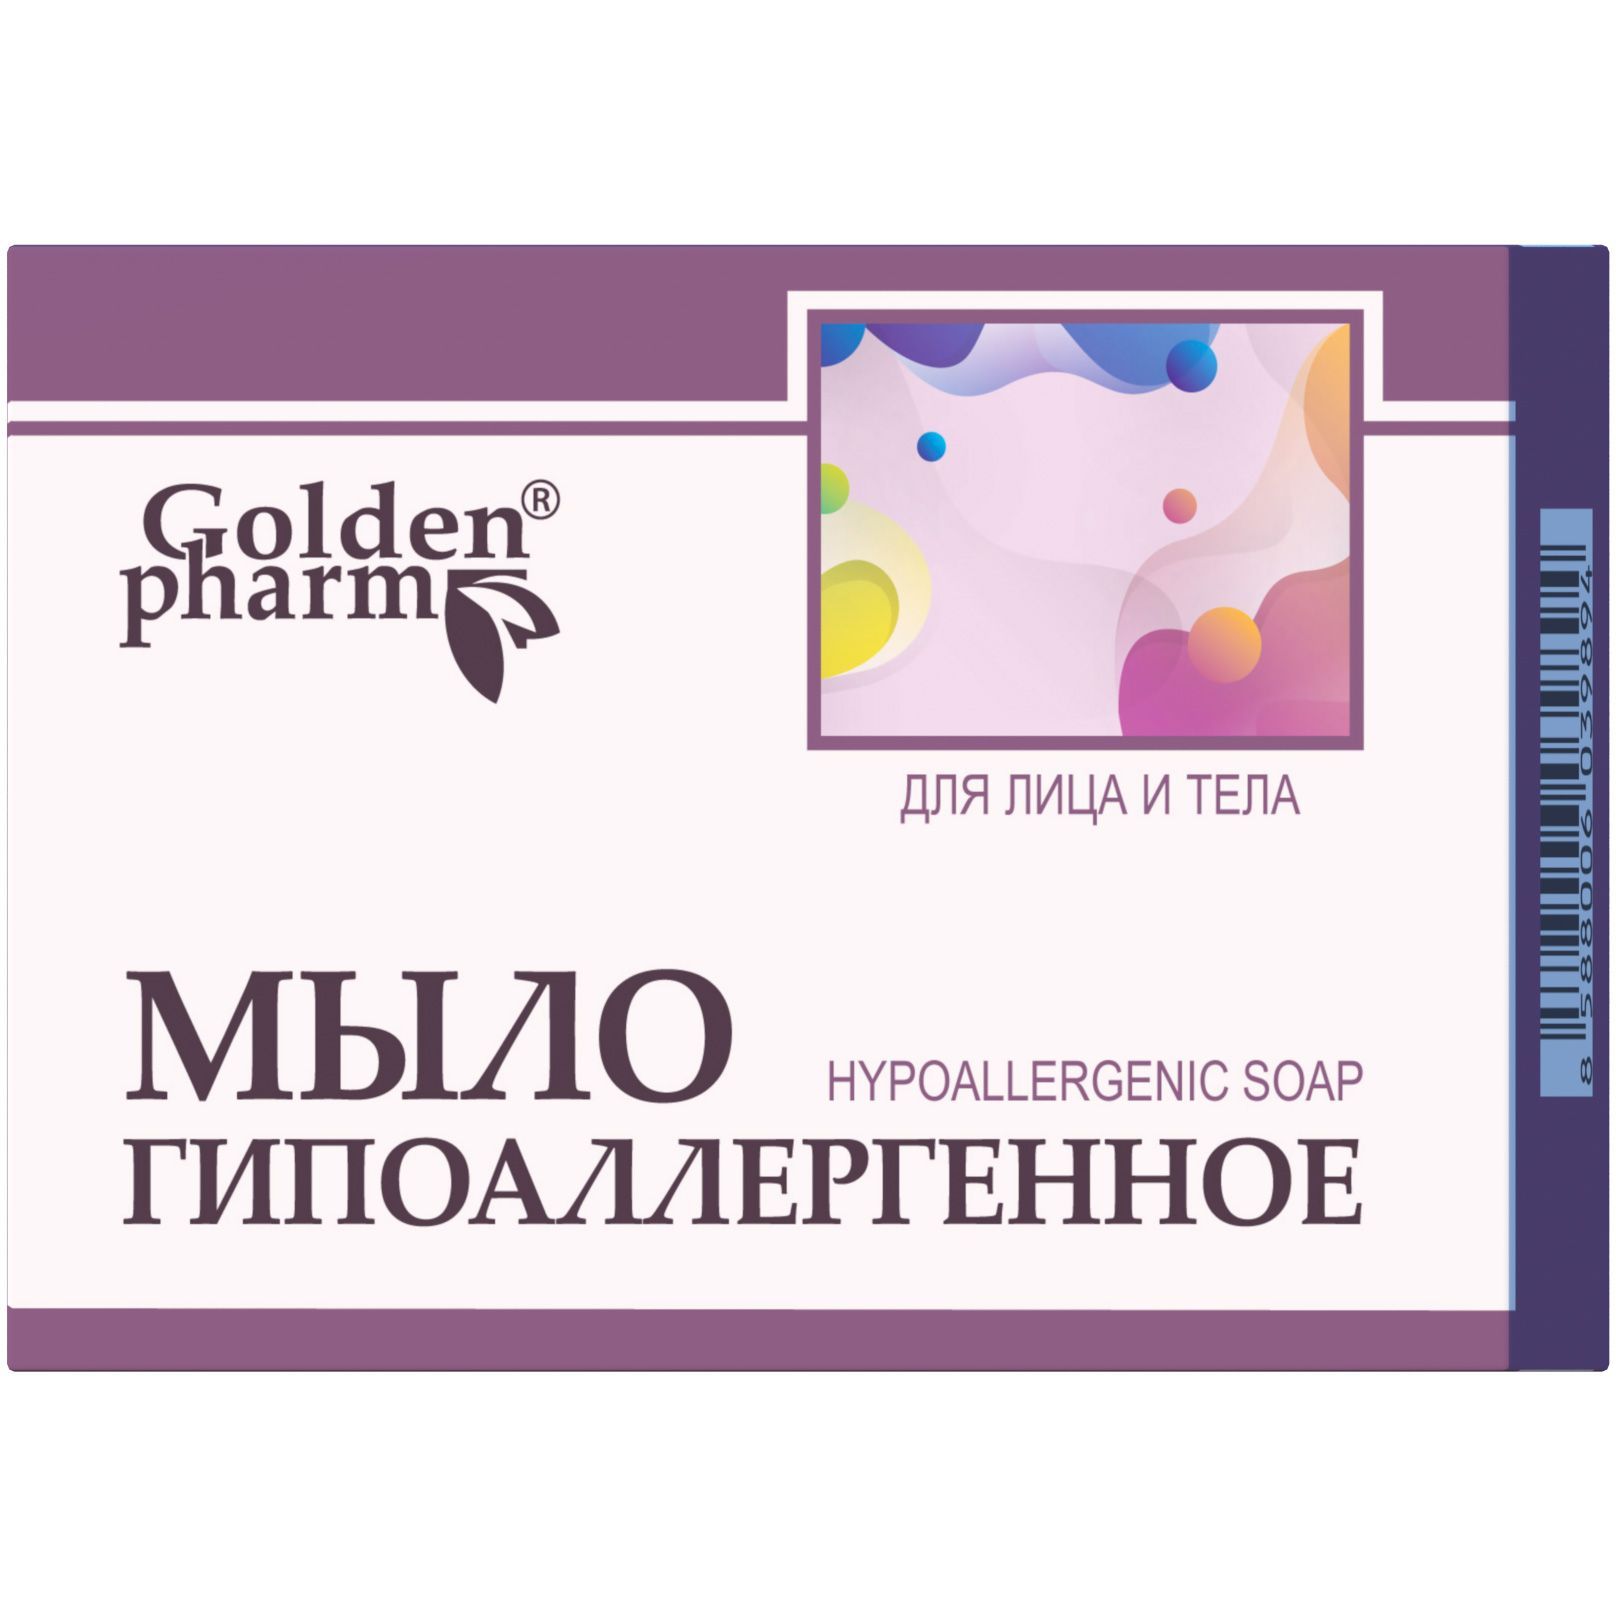 Мыло гипоаллергенное Golden Pharm, 70 г - фото 1